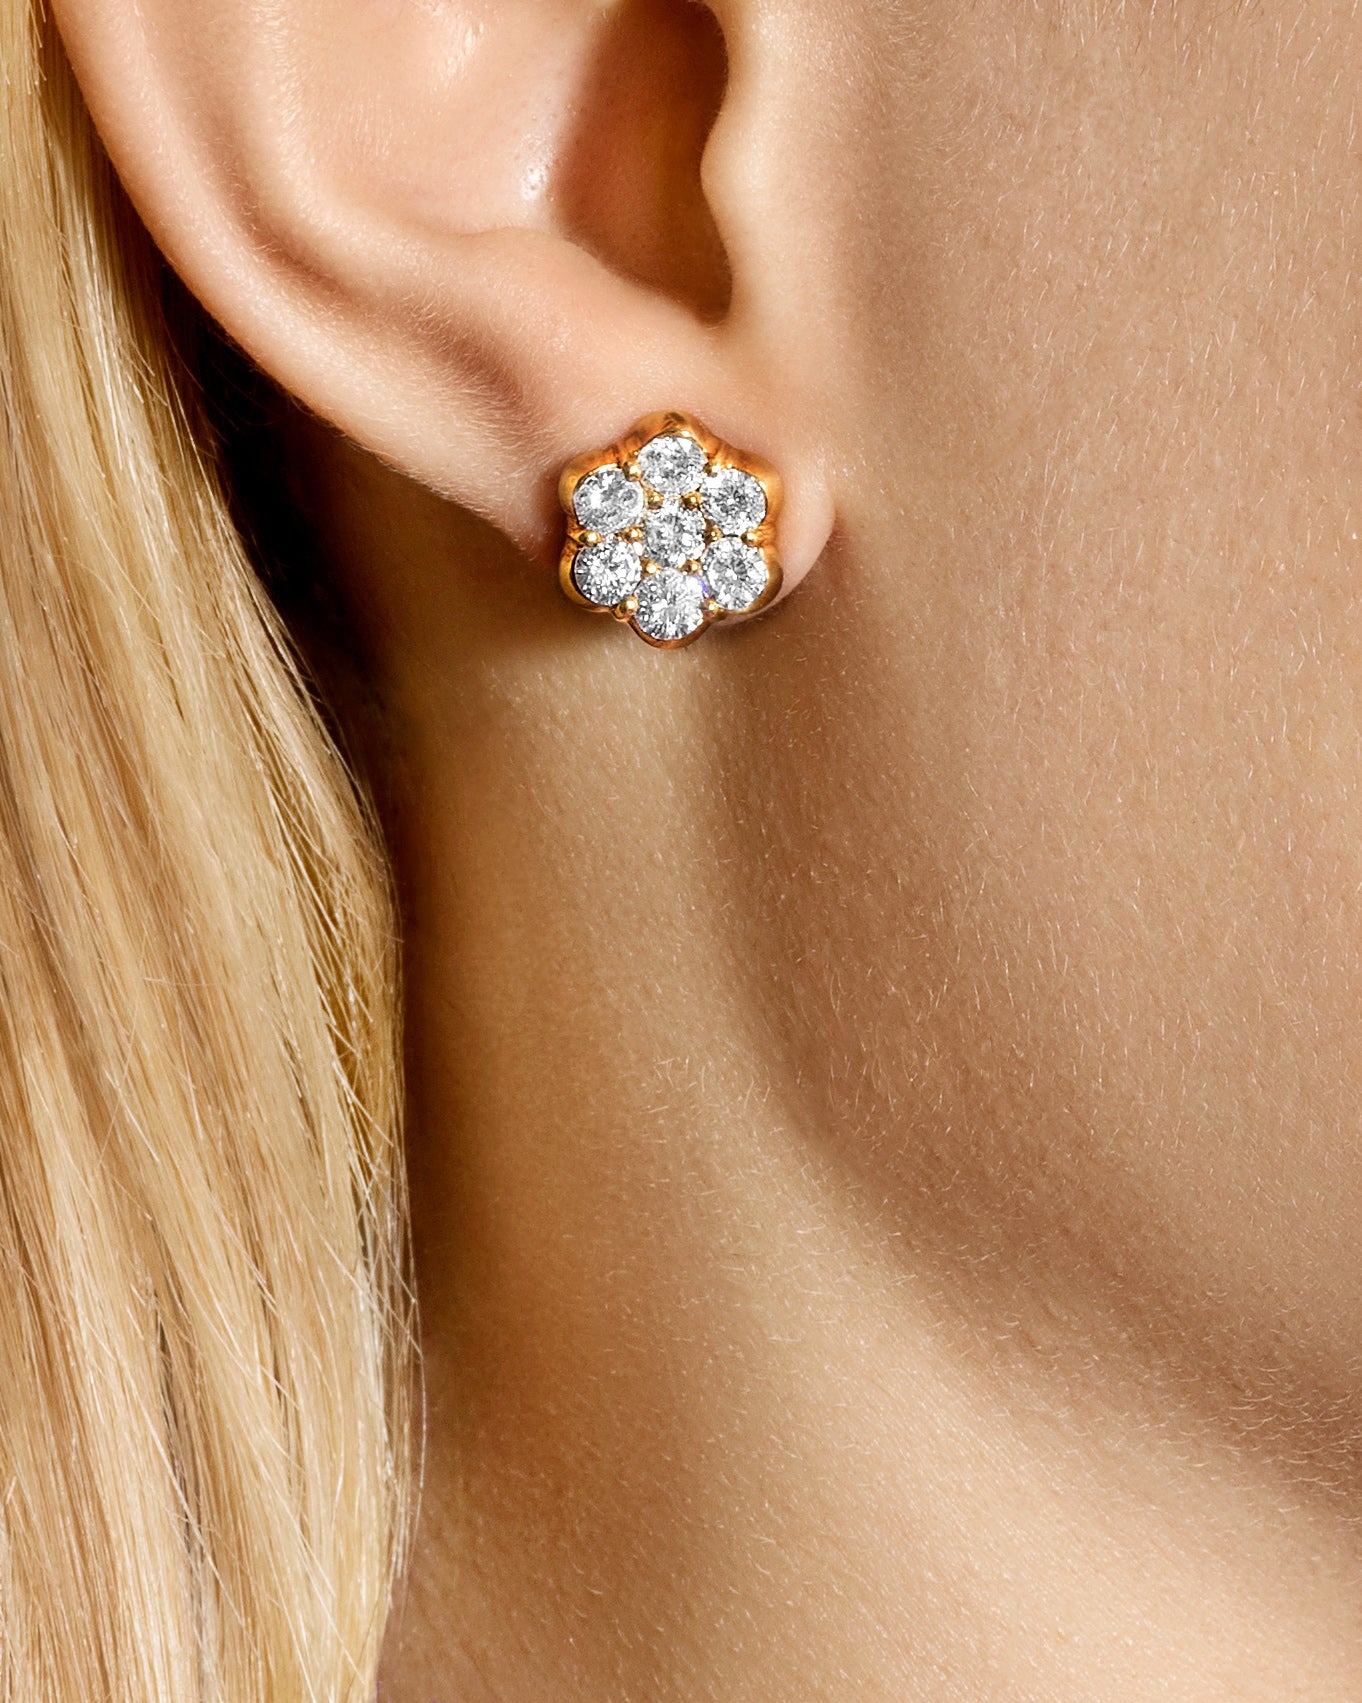 Flower Diamond & Rose Gold Stud Earrings - Small